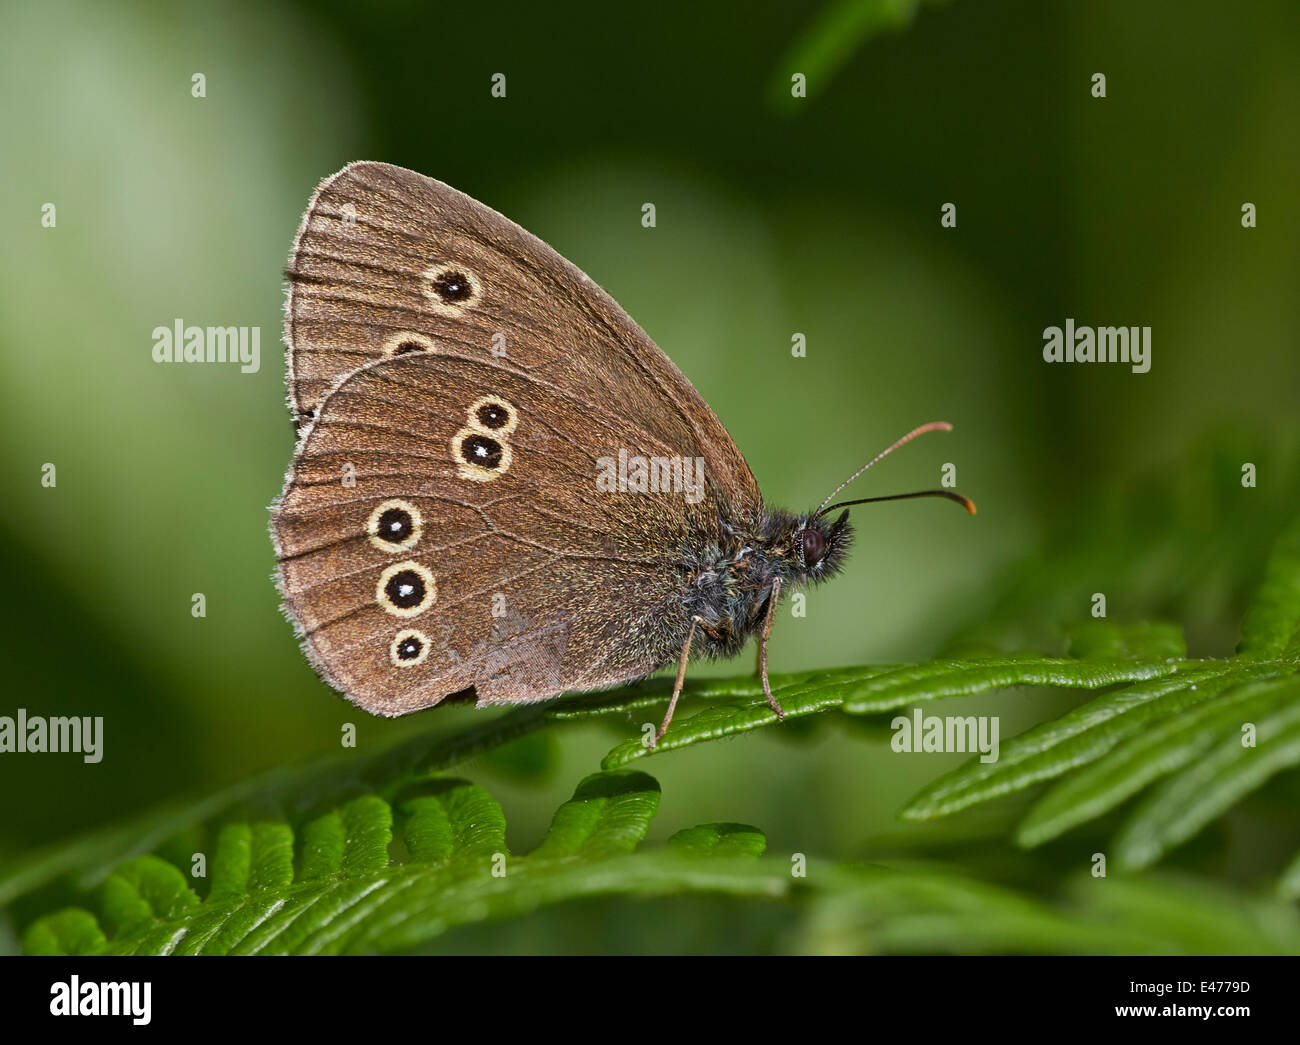 Reposant sur un papillon une fougère. Bookham commun, Surrey, Angleterre. Banque D'Images